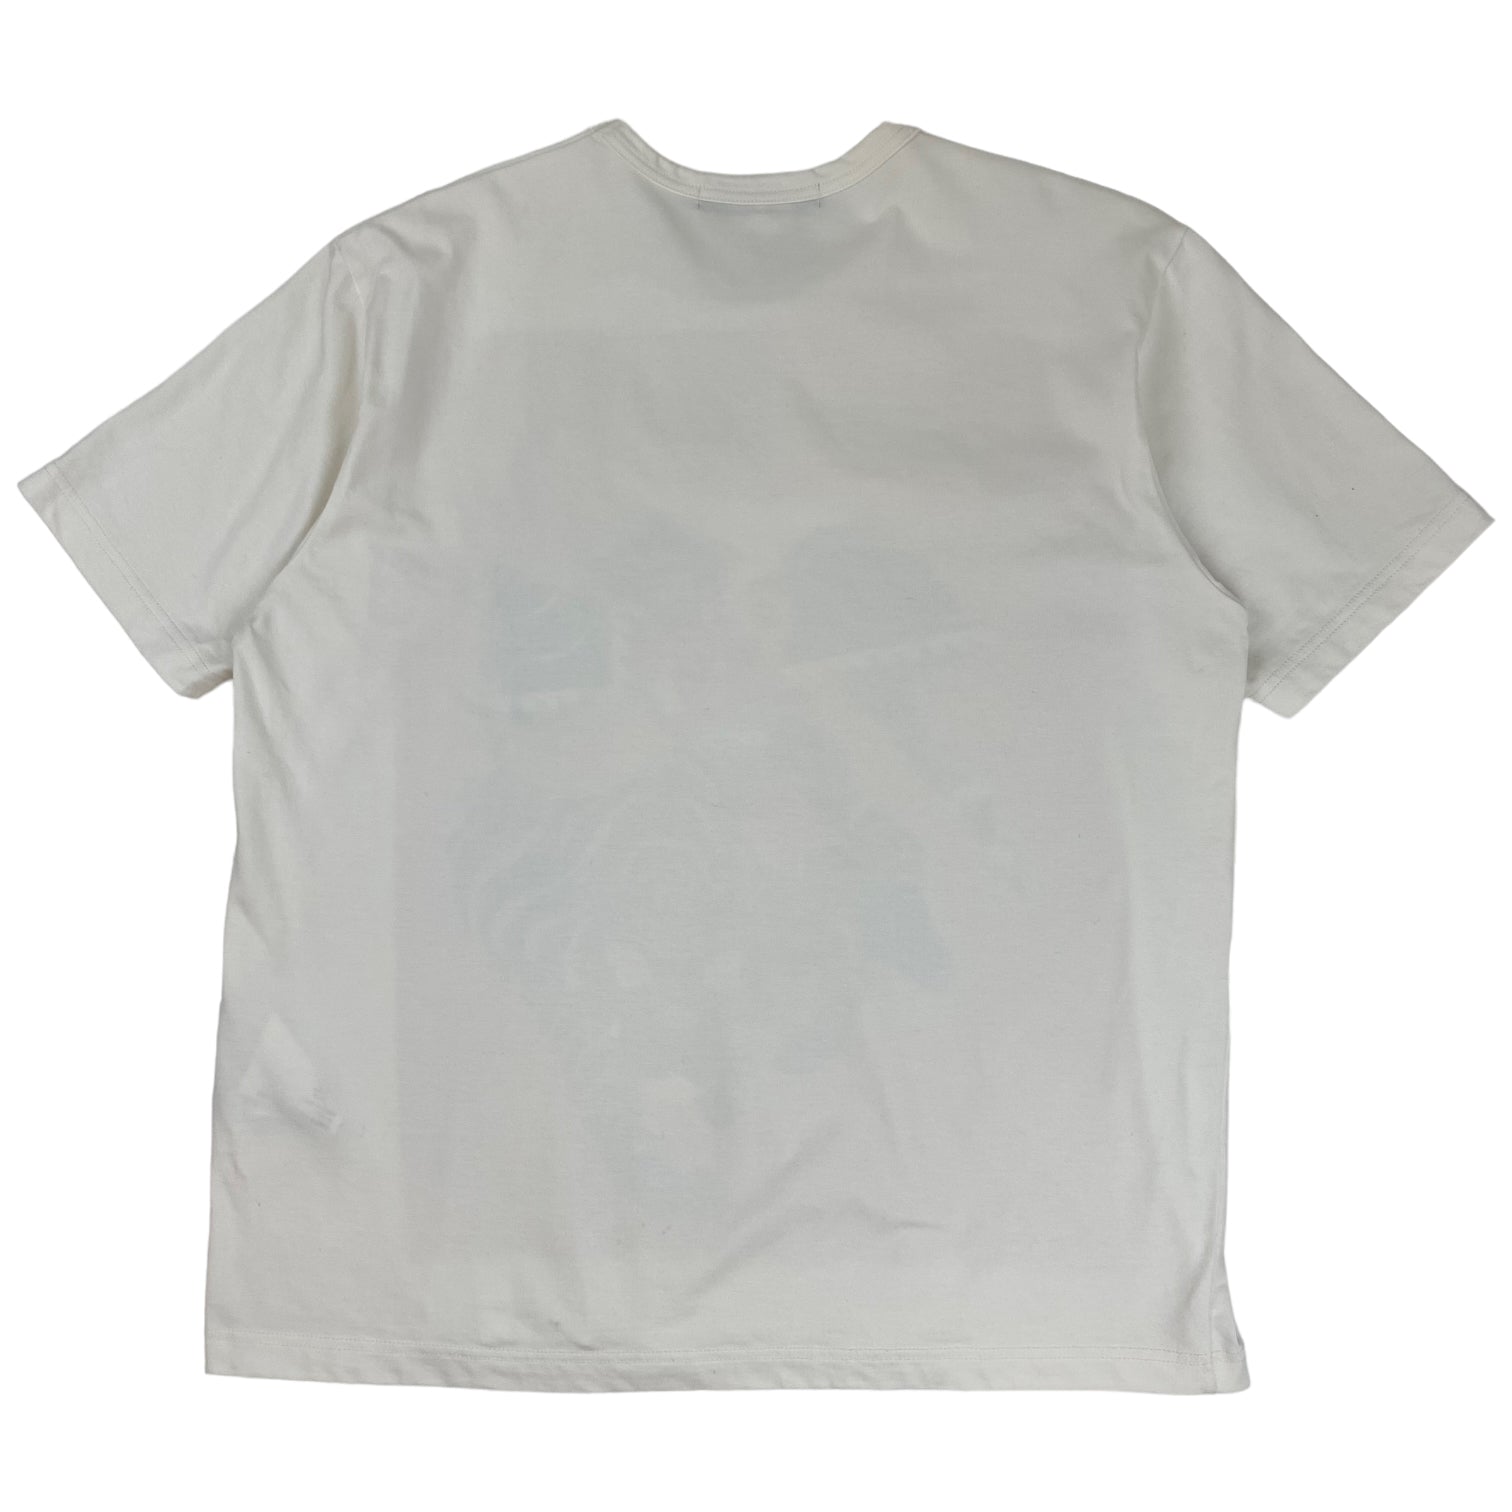 Junya Watanabe Tiger Graphic T-Shirt White